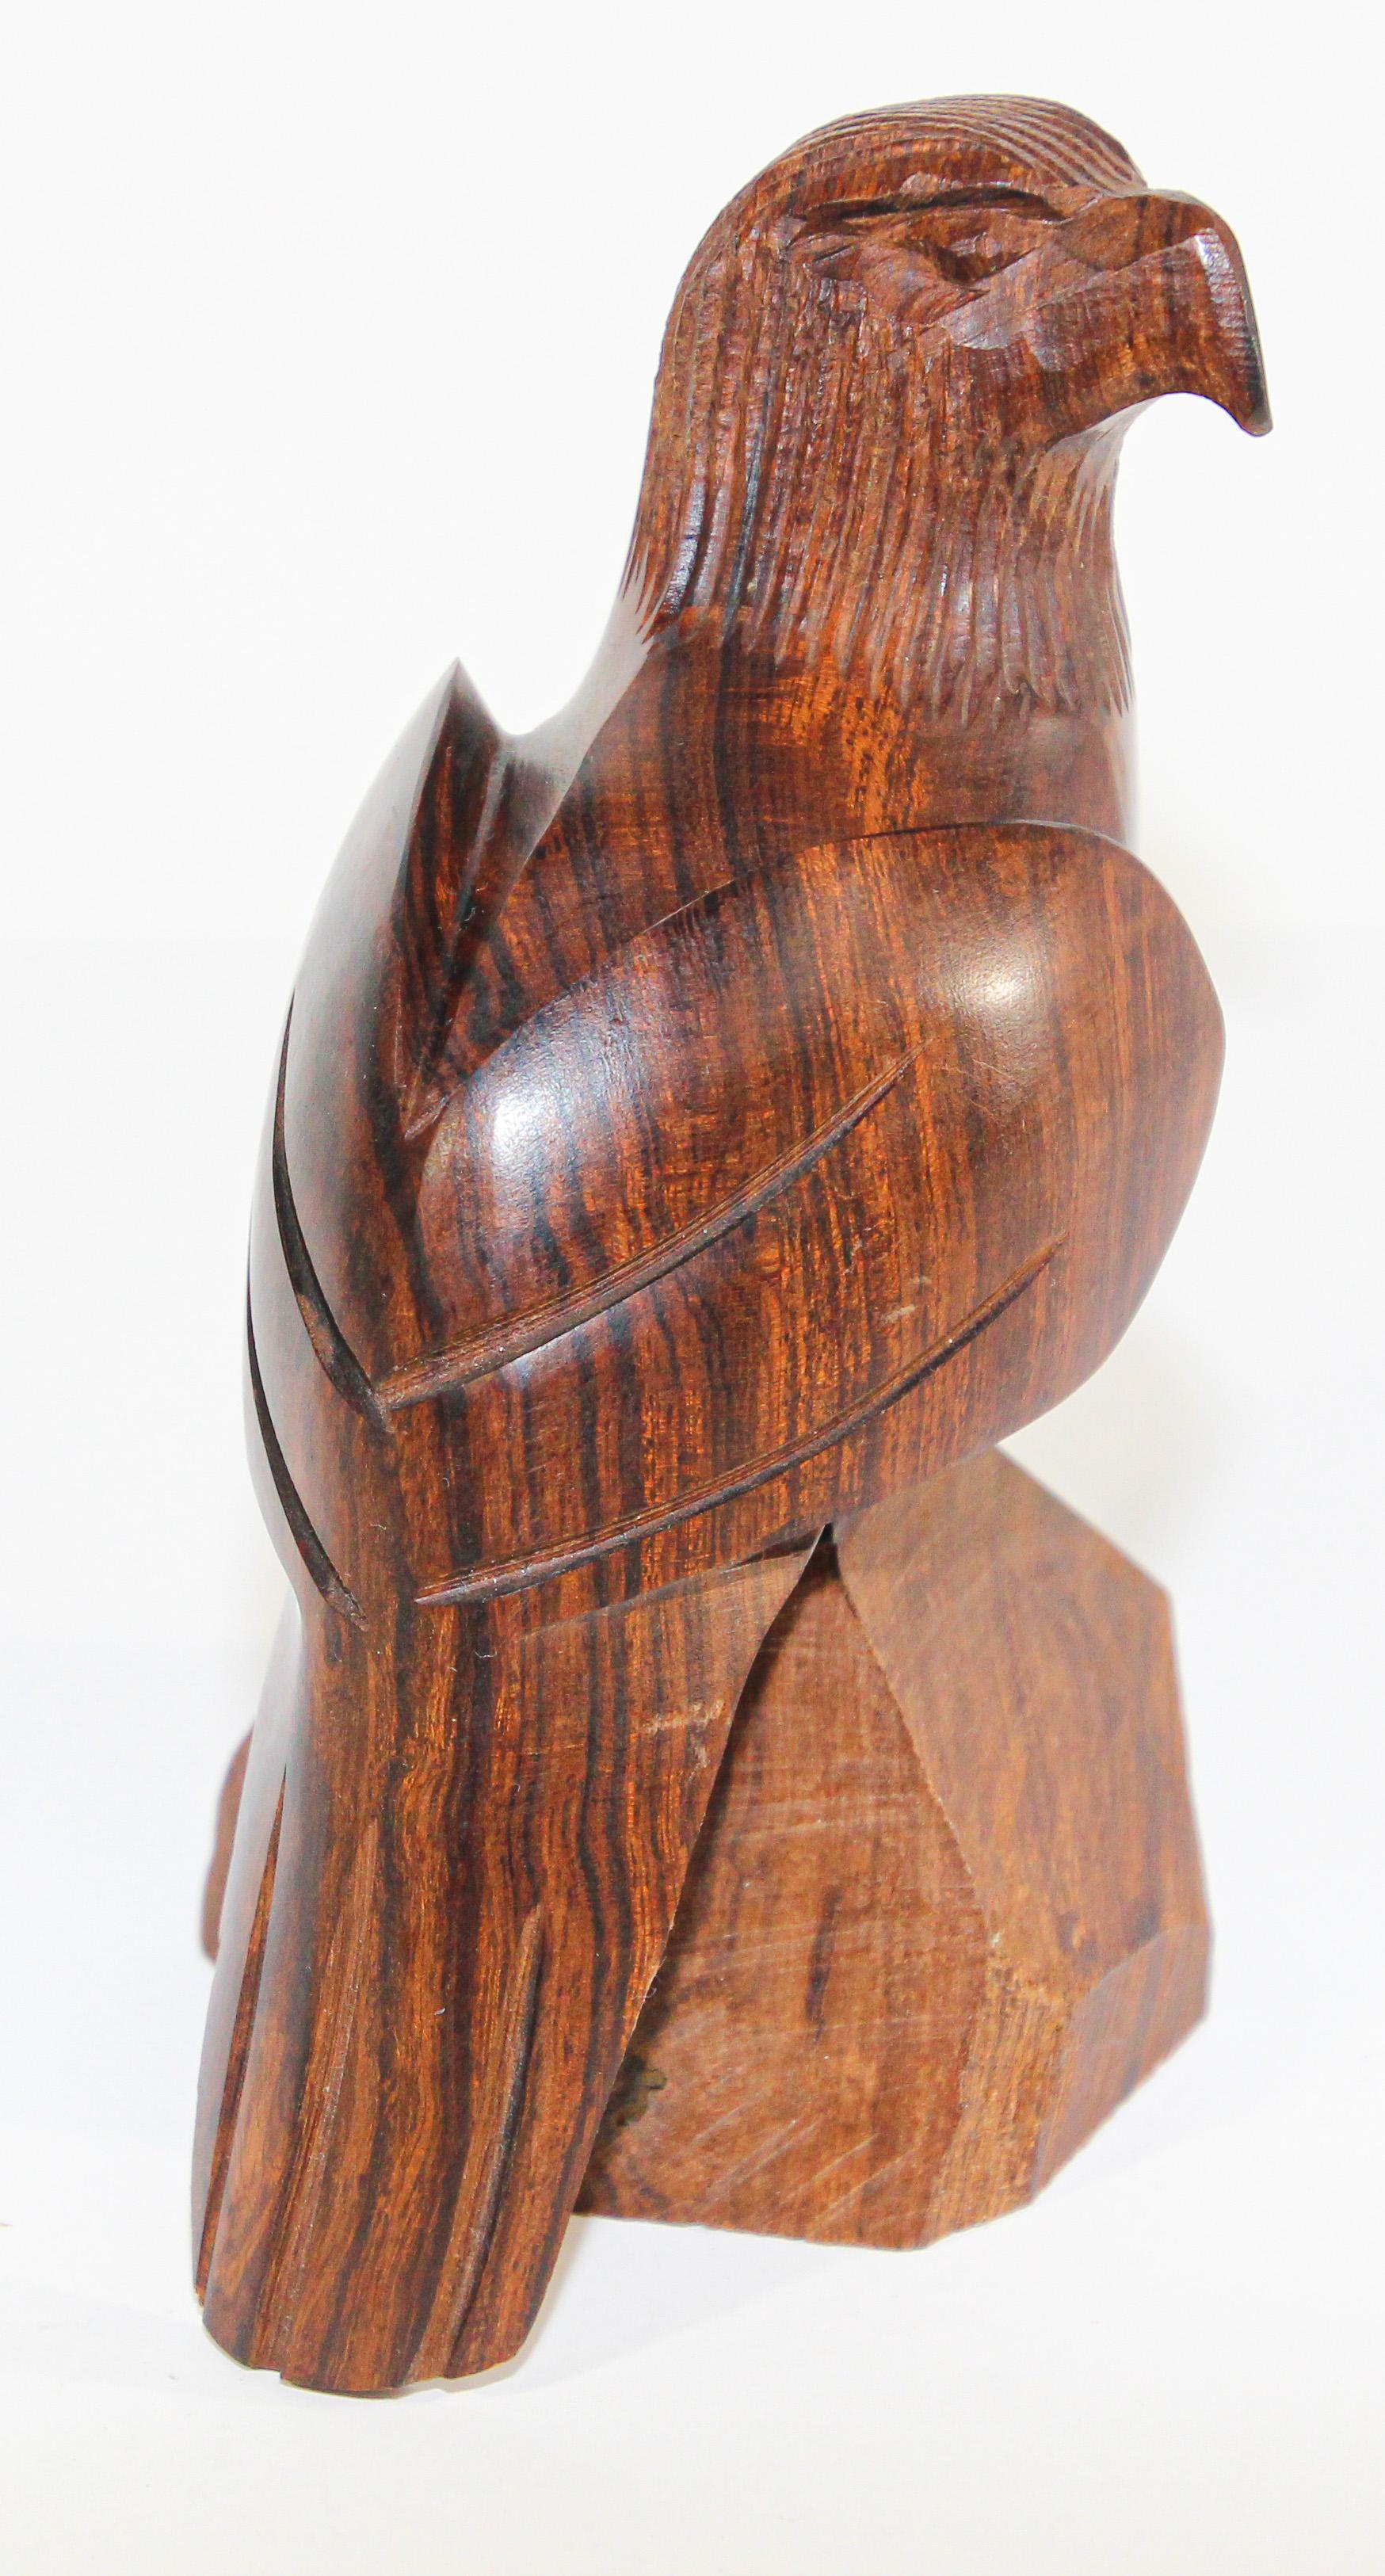 Sculpture vintage d'un aigle américain sculptée en bois de fer sérifié.
Vintage Ironwood Southwestern seri sculpture d'un aigle sculpté à la main.
Dimensions : 5.5